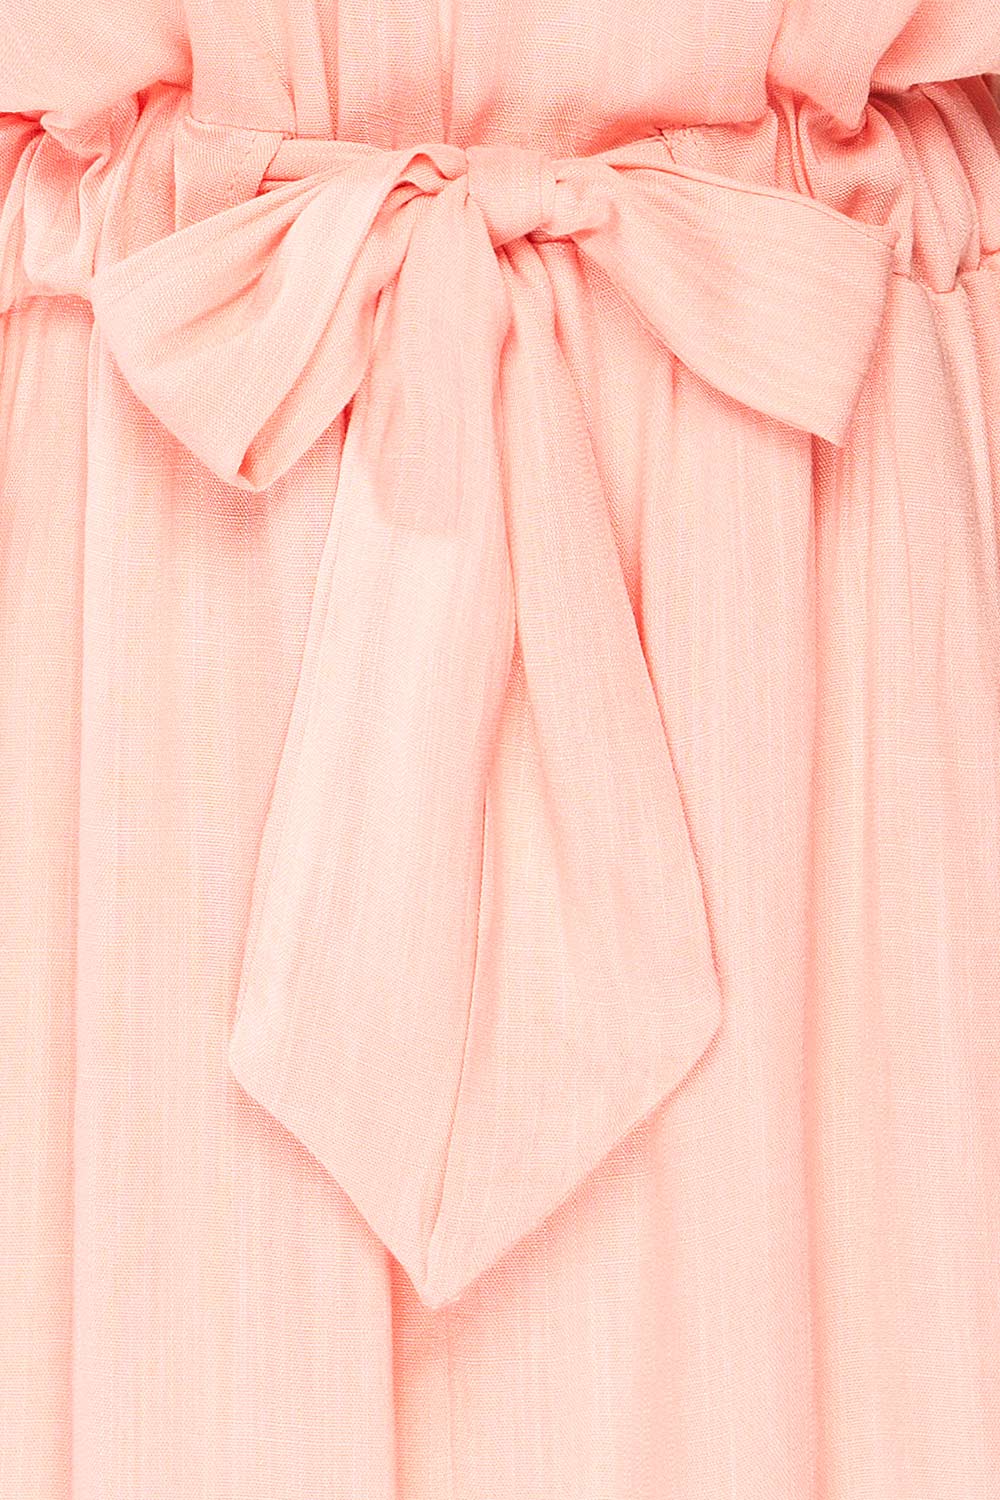 Naousa Pink V-Neck Short Sleeve Dress | La petite garçonne bow